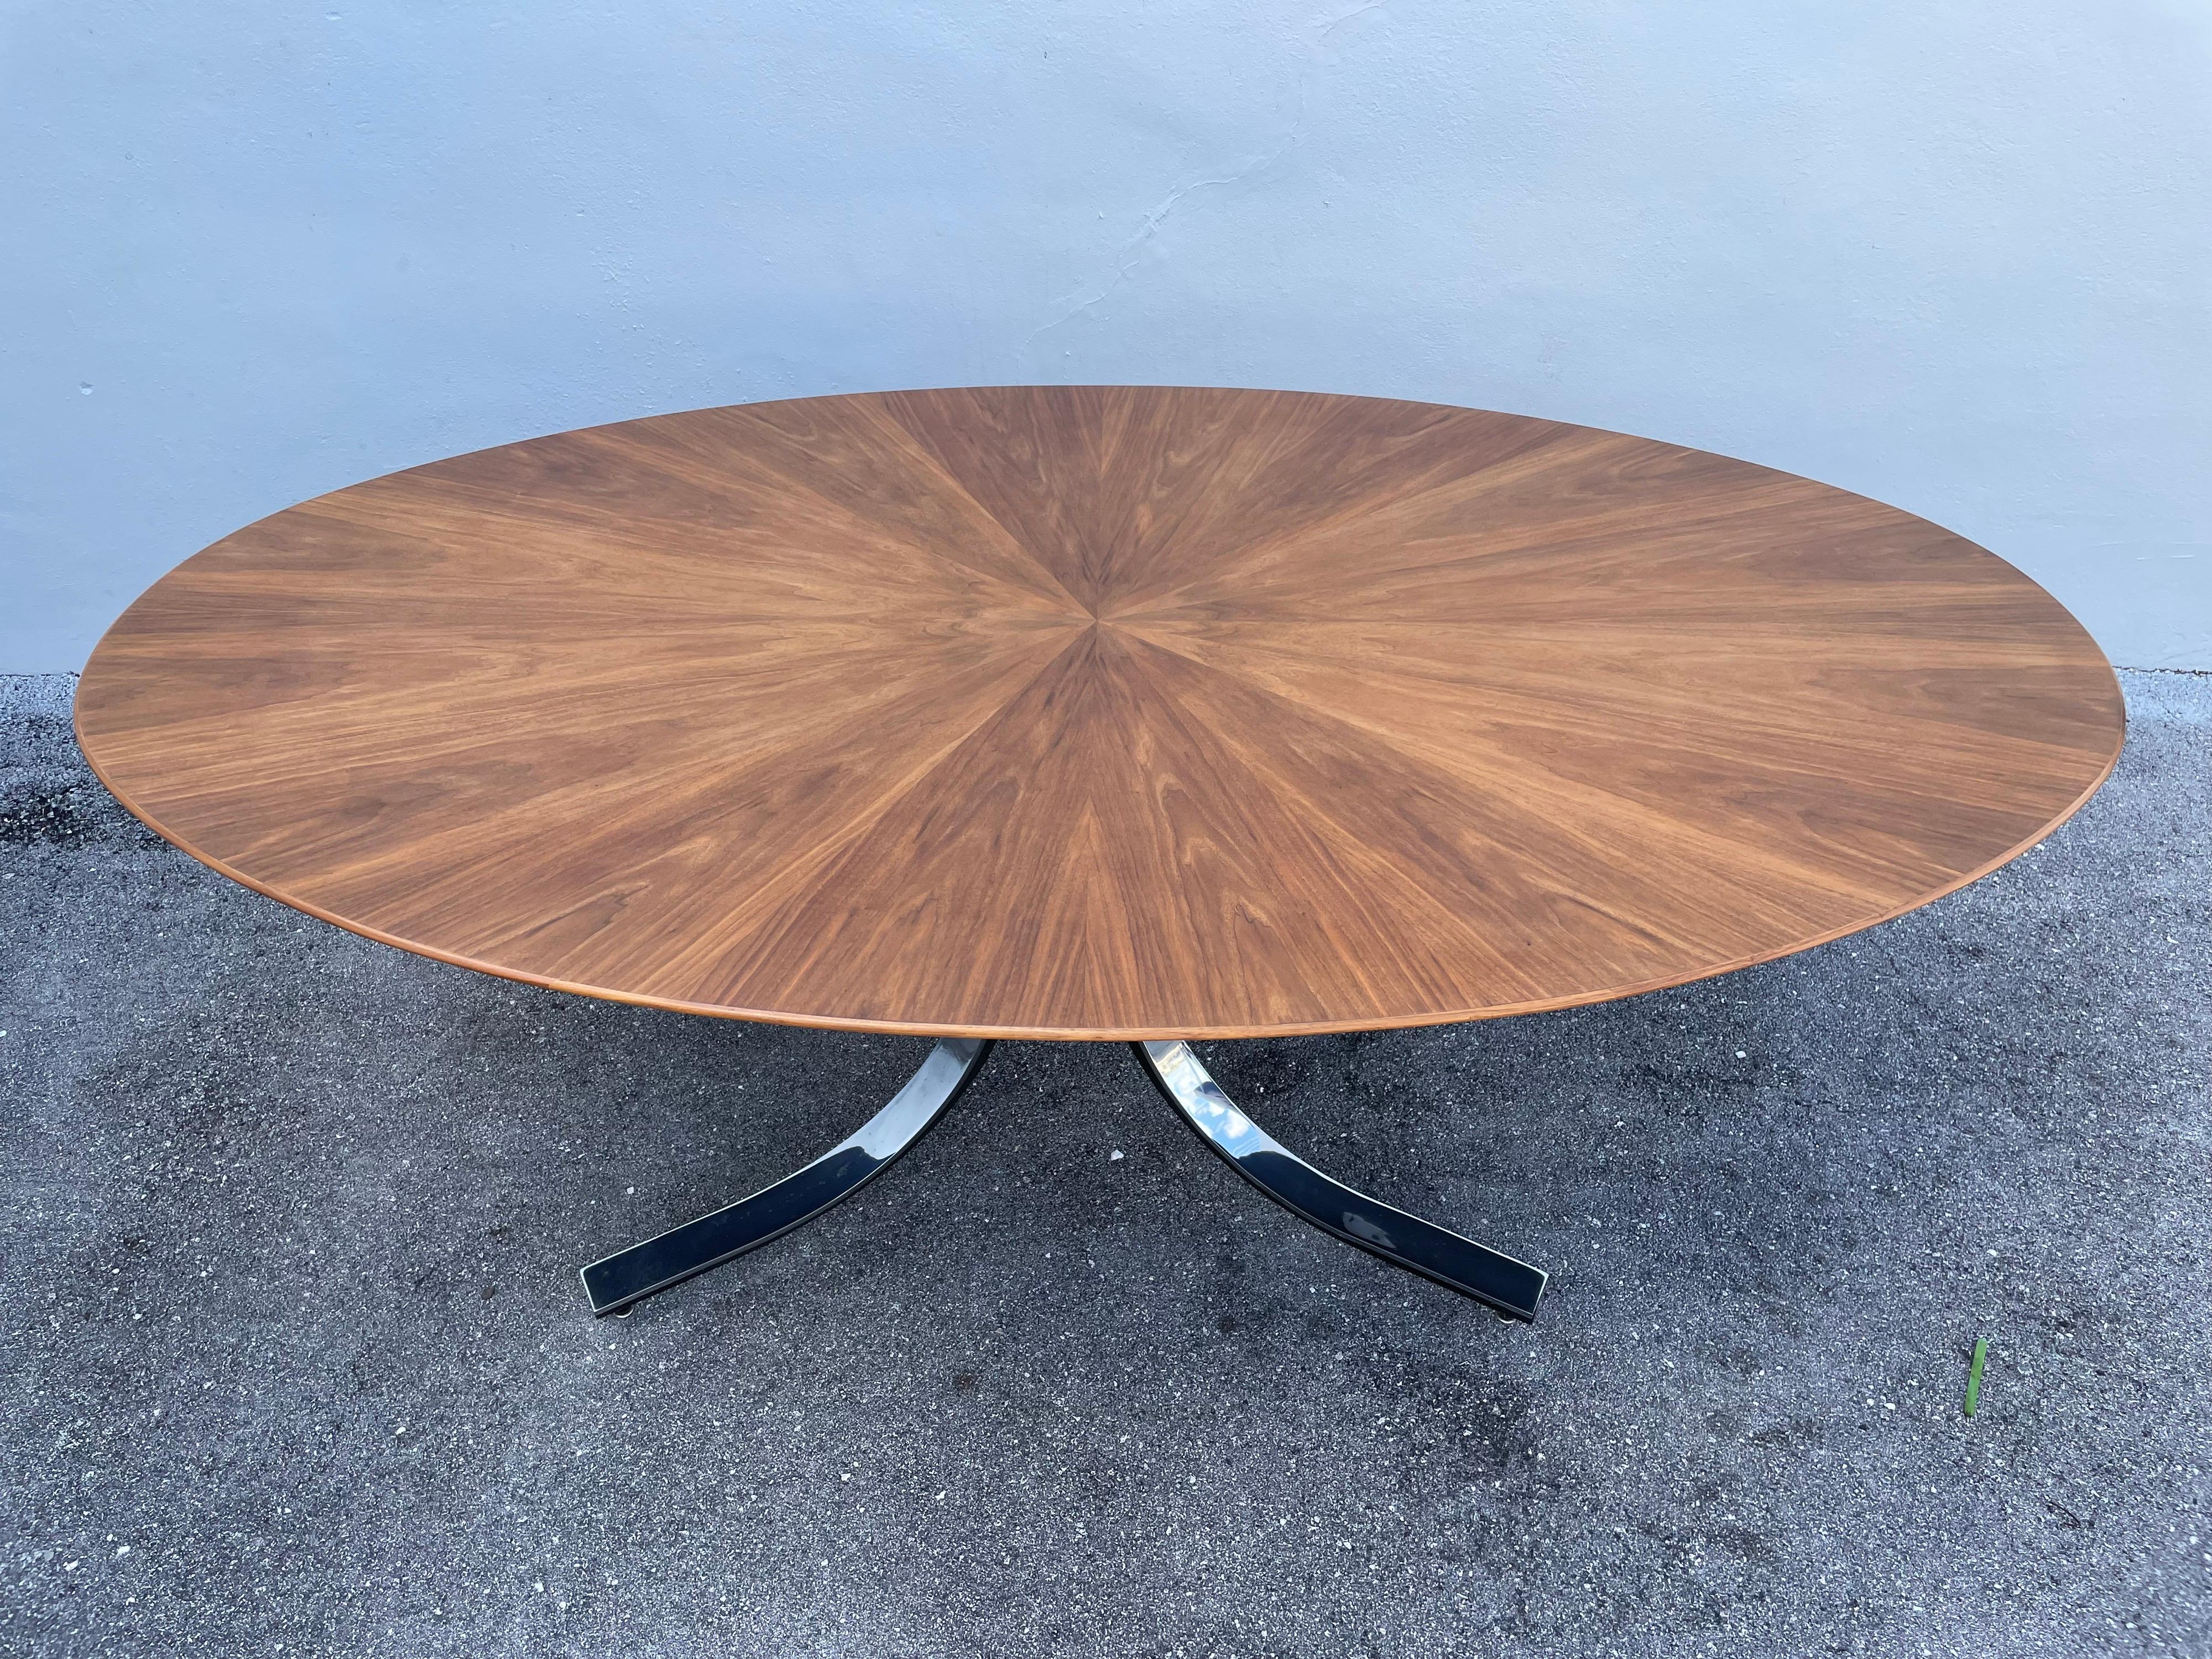 Table de salle à manger en noyer au design elliptique et étoilé de la société de meubles Stow & Davis, souvent attribuée à Osvaldo Borsani (nous le soupçonnons). Le plateau de table est en noyer et les pieds sont en acier inoxydable. Une pièce